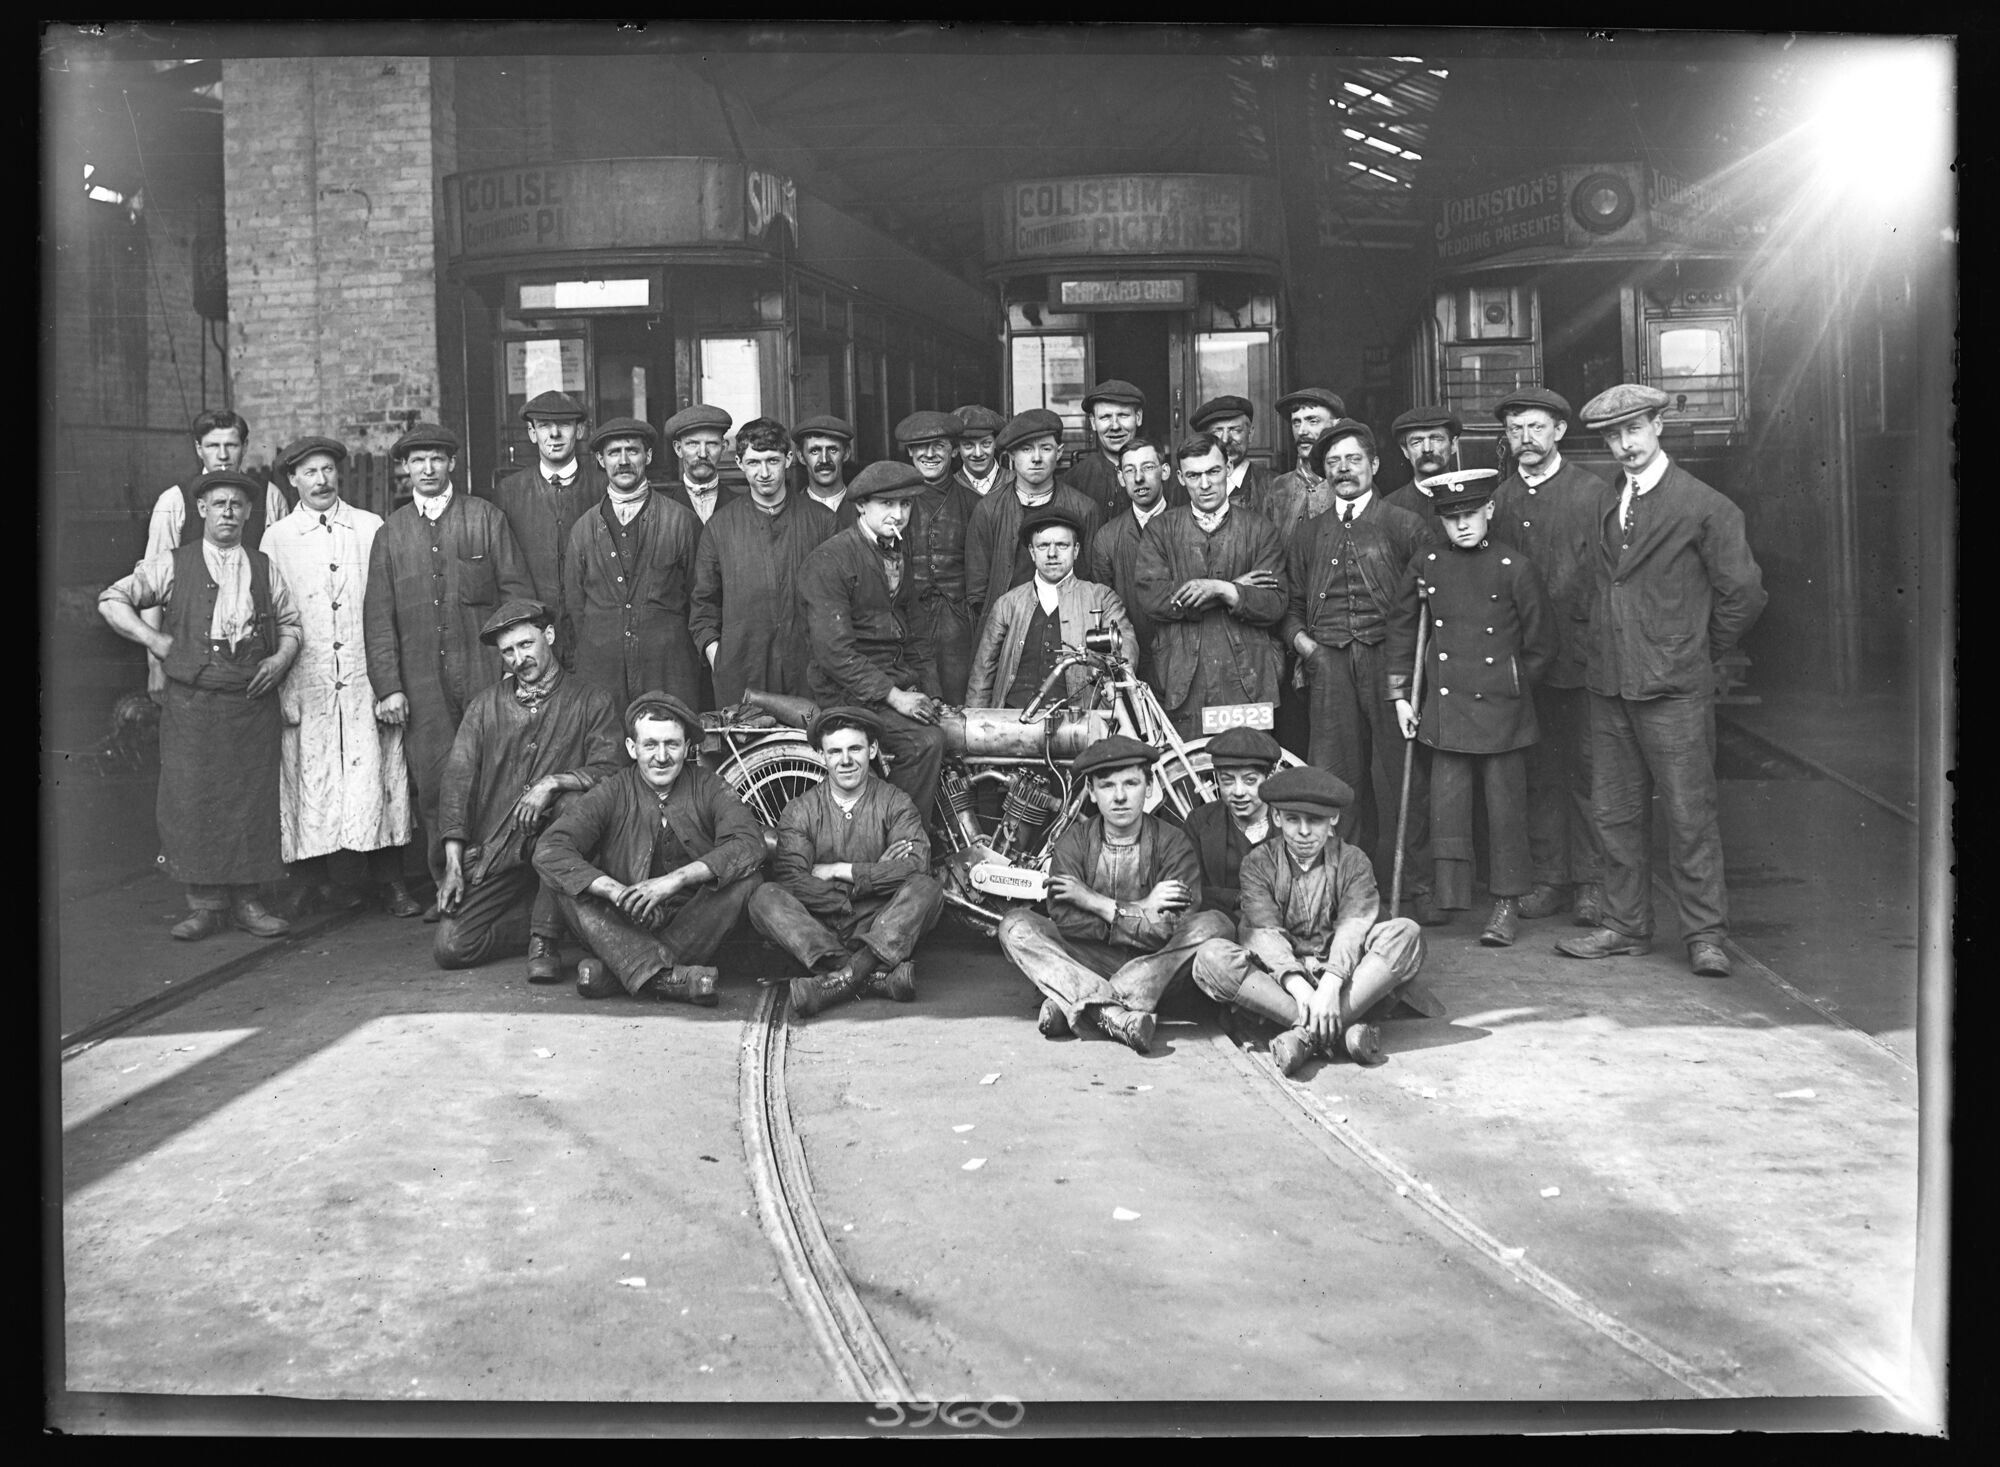 Electric Tram Depot staff, Barrow-in-Furness